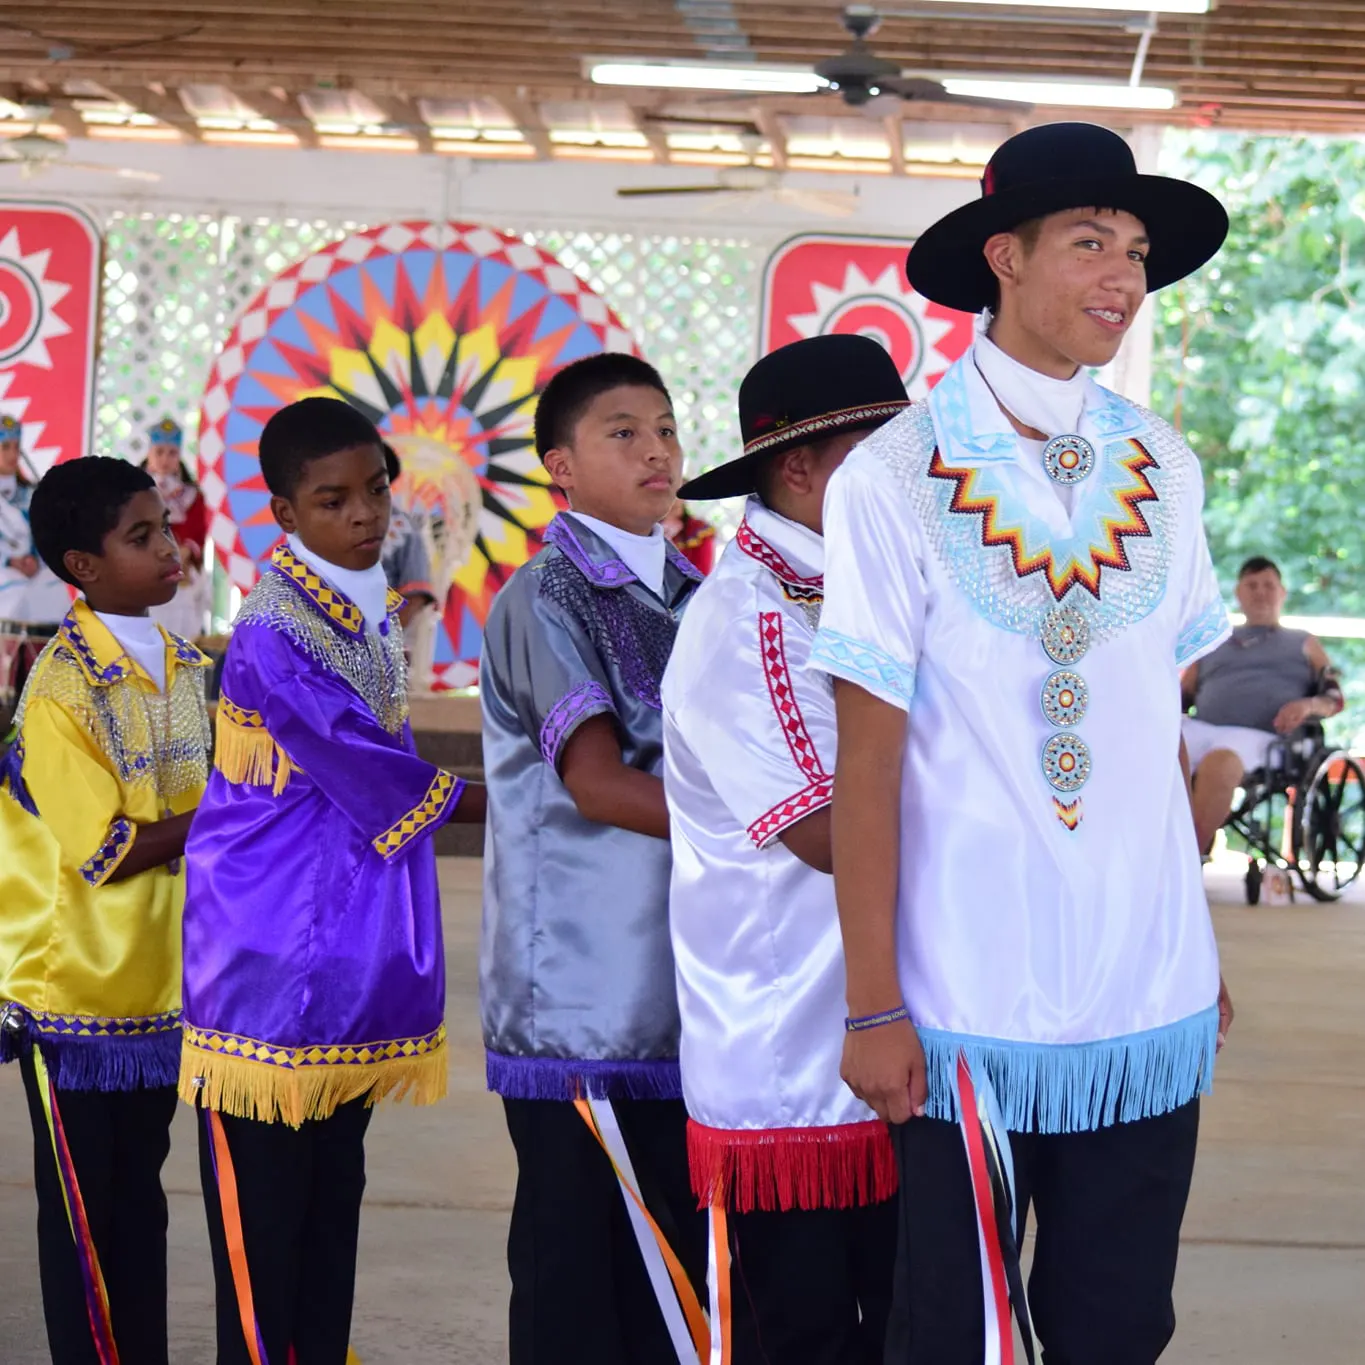 Choctaw Indian Fair Culture